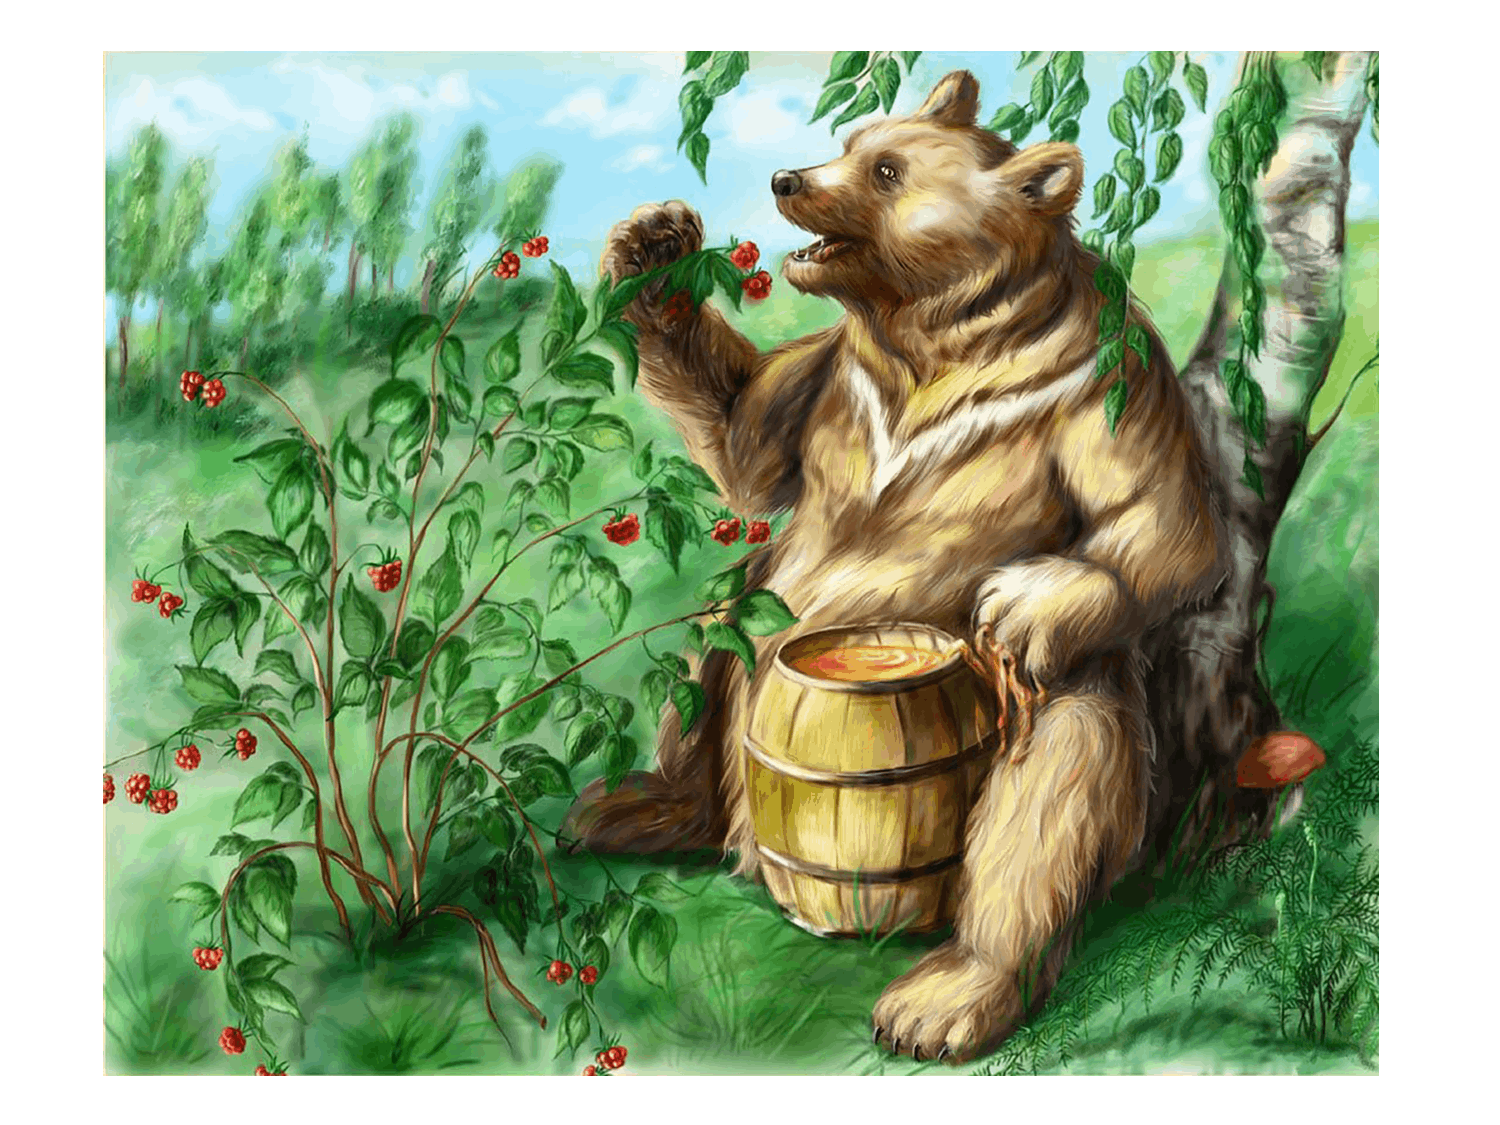 Медведь с медом. Медведь в малиннике. Медвежонок с бочонком меда. Медведь на пасеке. Медведя пчела мед